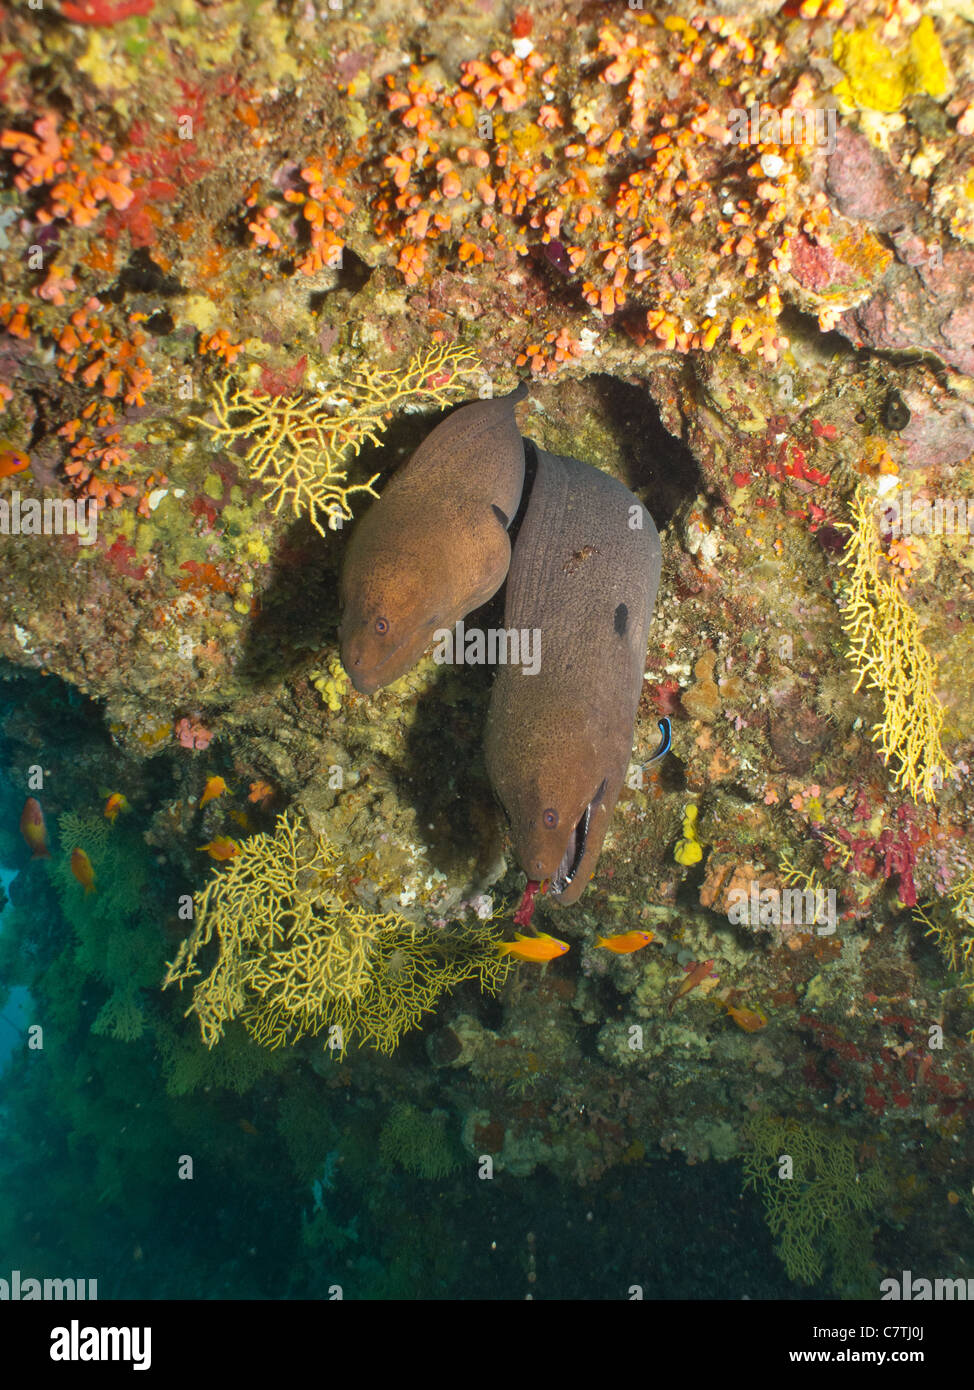 Zwei riesige Moränen, die sich aus einem Hangenden Unterwasser Malediven Korallenriff Stockfoto